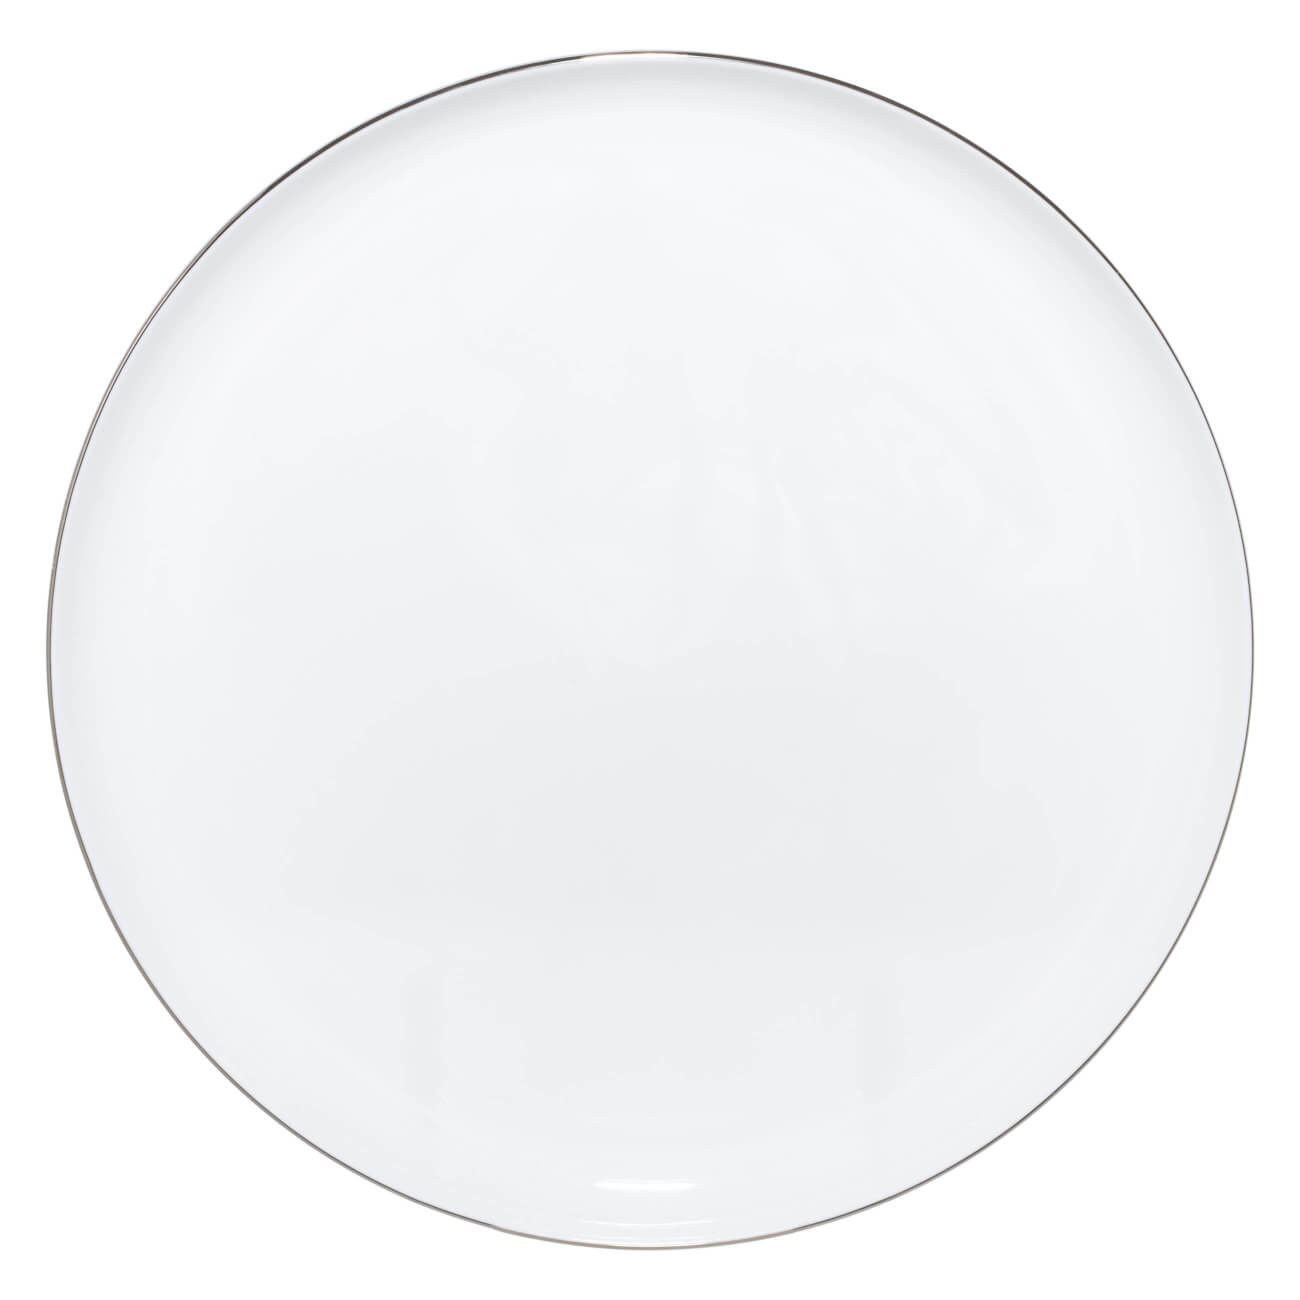 Тарелка обеденная, 28 см, фарфор F, Antarctica тарелка суповая 20х4 см 2 шт фарфор f antarctica